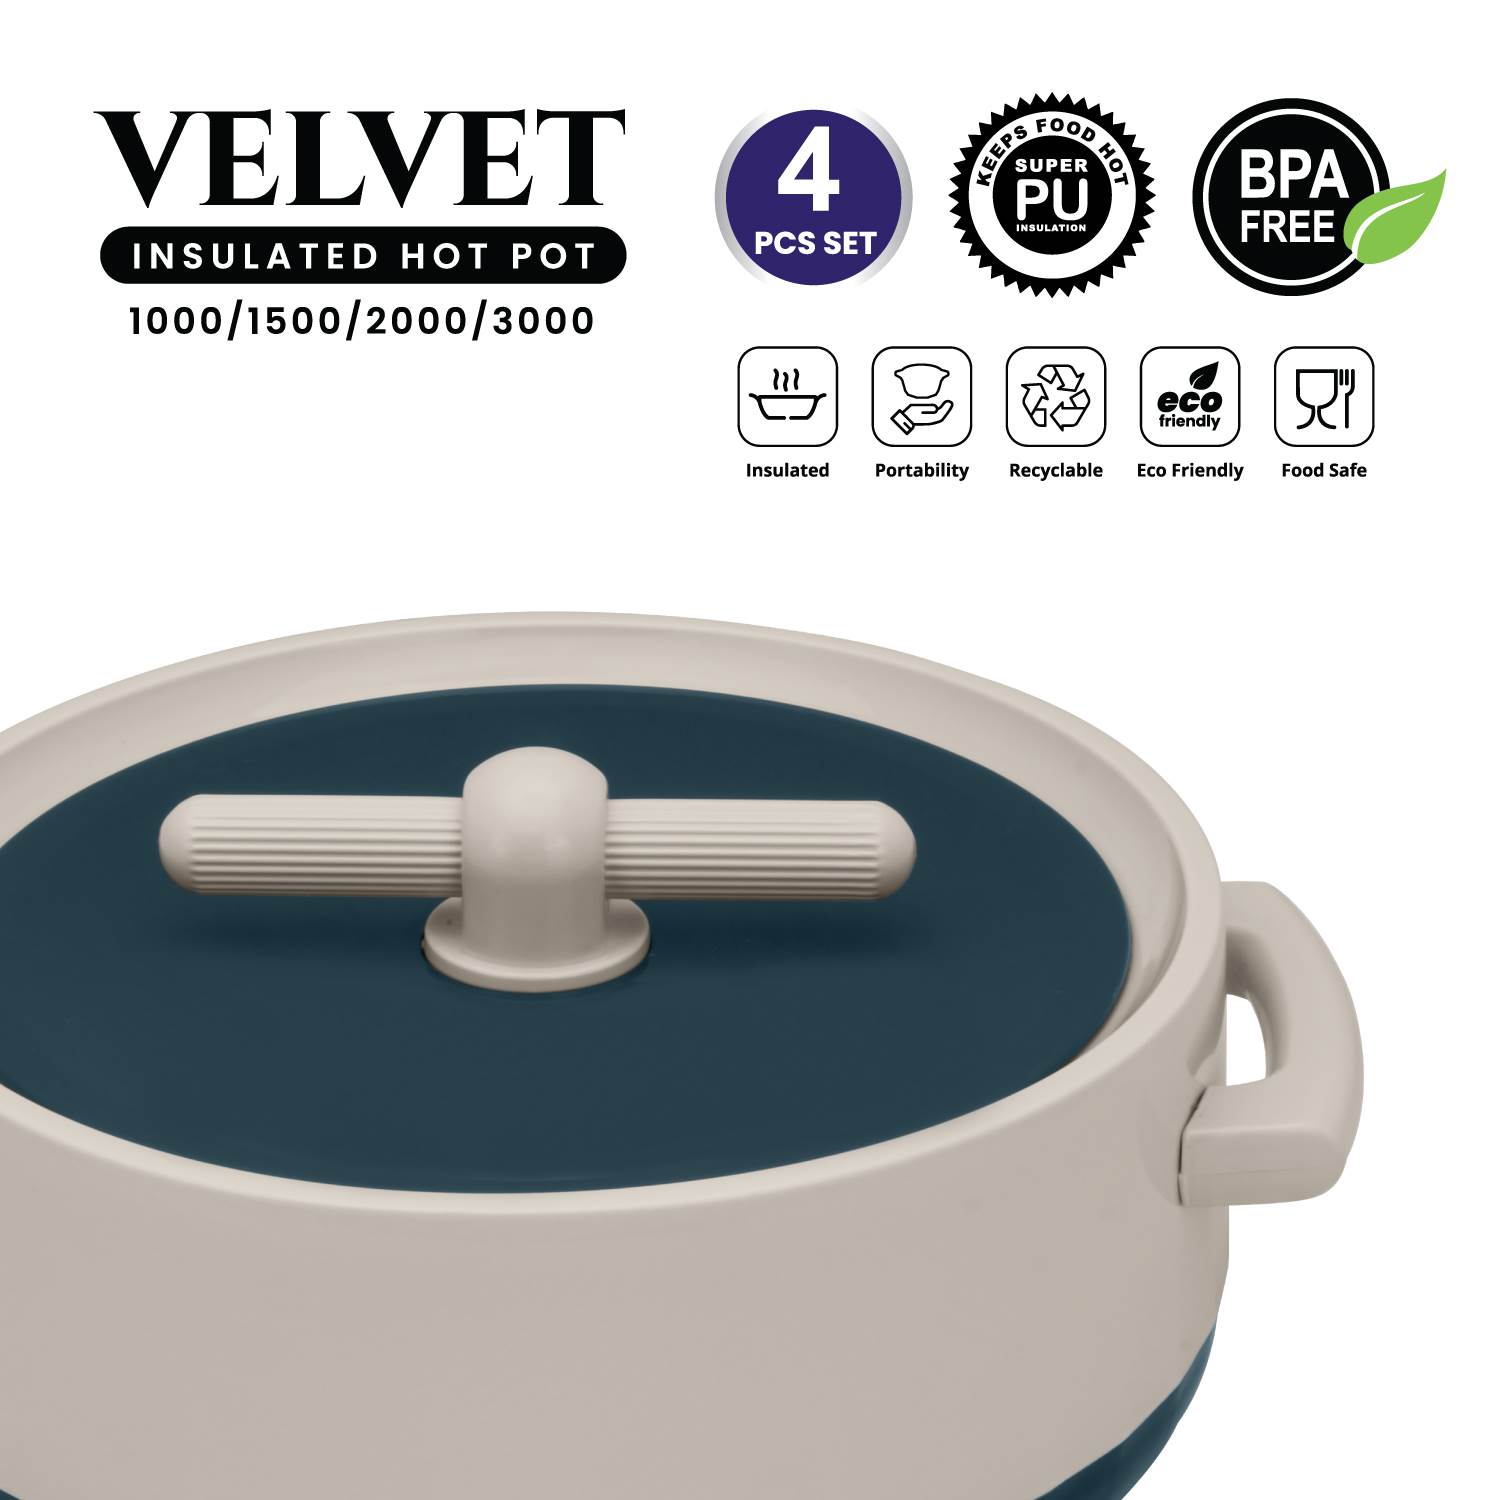 Selvel Velvet 4 Pc Set (1000/1500/2000/3000) - GREEN